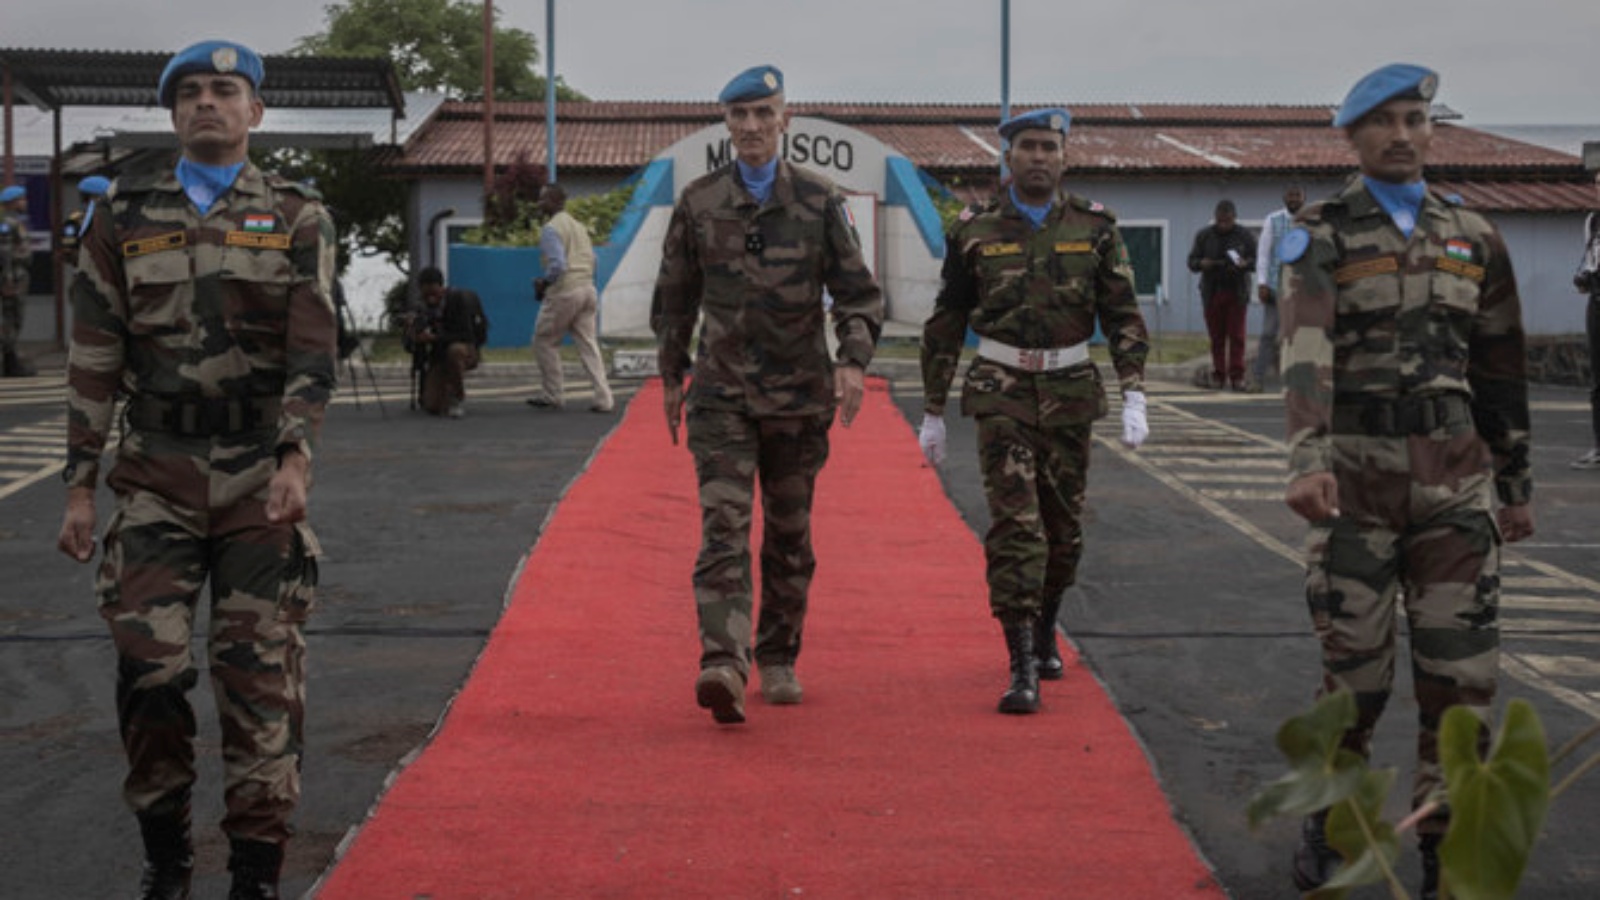 جنود حفظ السلام التابعون للأمم المتحدة يحضرون احتفالًا في غوما ، جمهورية الكونغو الديمقراطية ، في 11 مارس 2023 تكريما للزملاء الذين قتلوا أثناء أداء الواجب منذ بدء المهمة